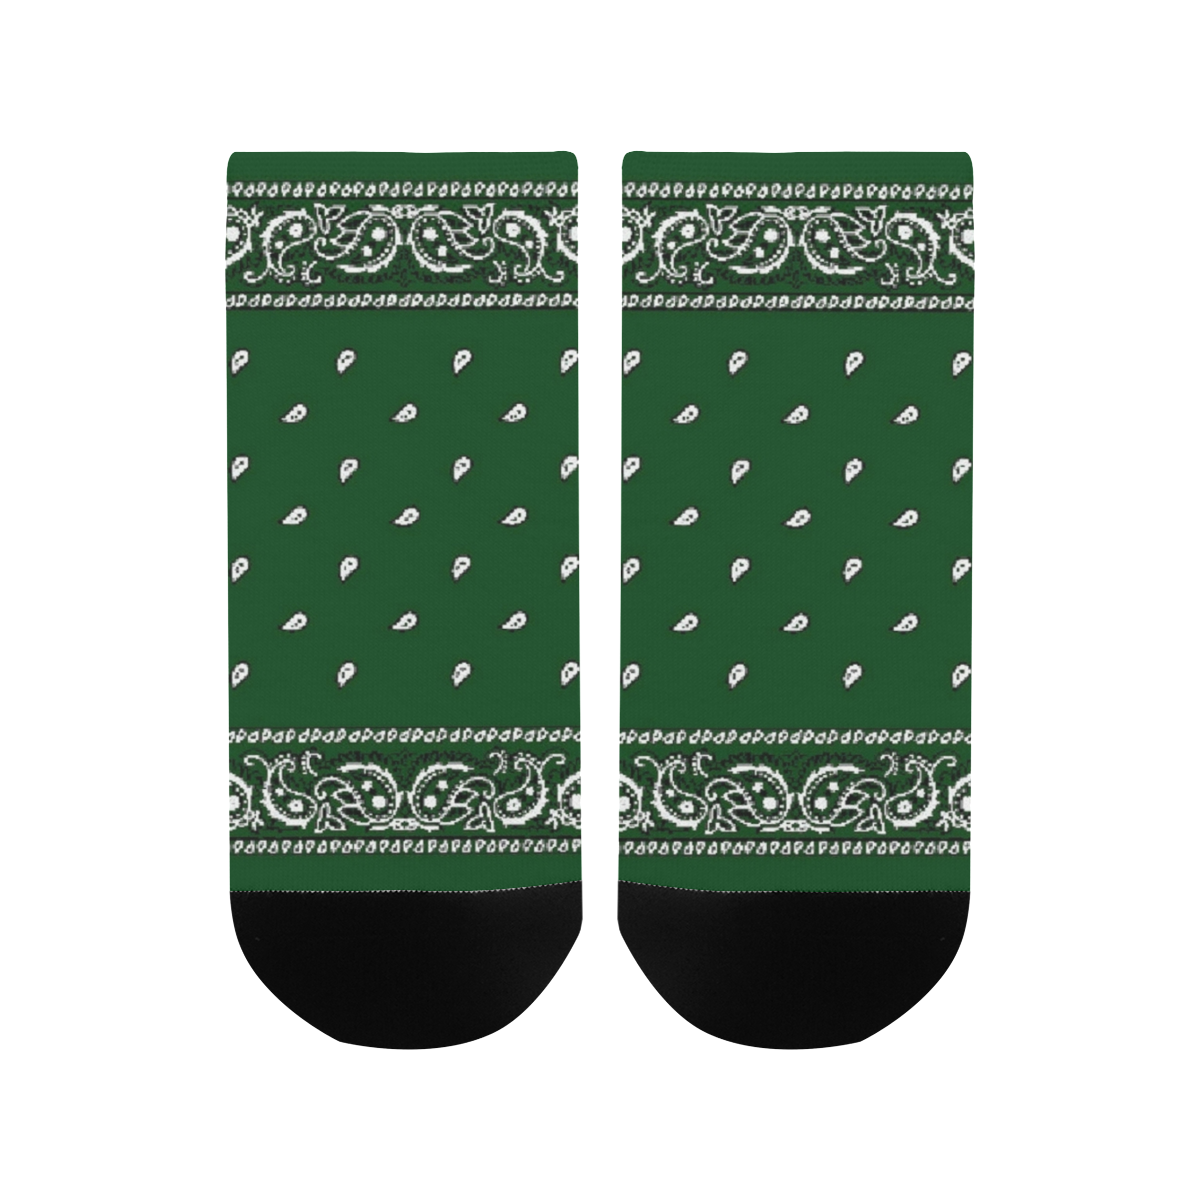 KERCHIEF PATTERN GREEN Men's Ankle Socks